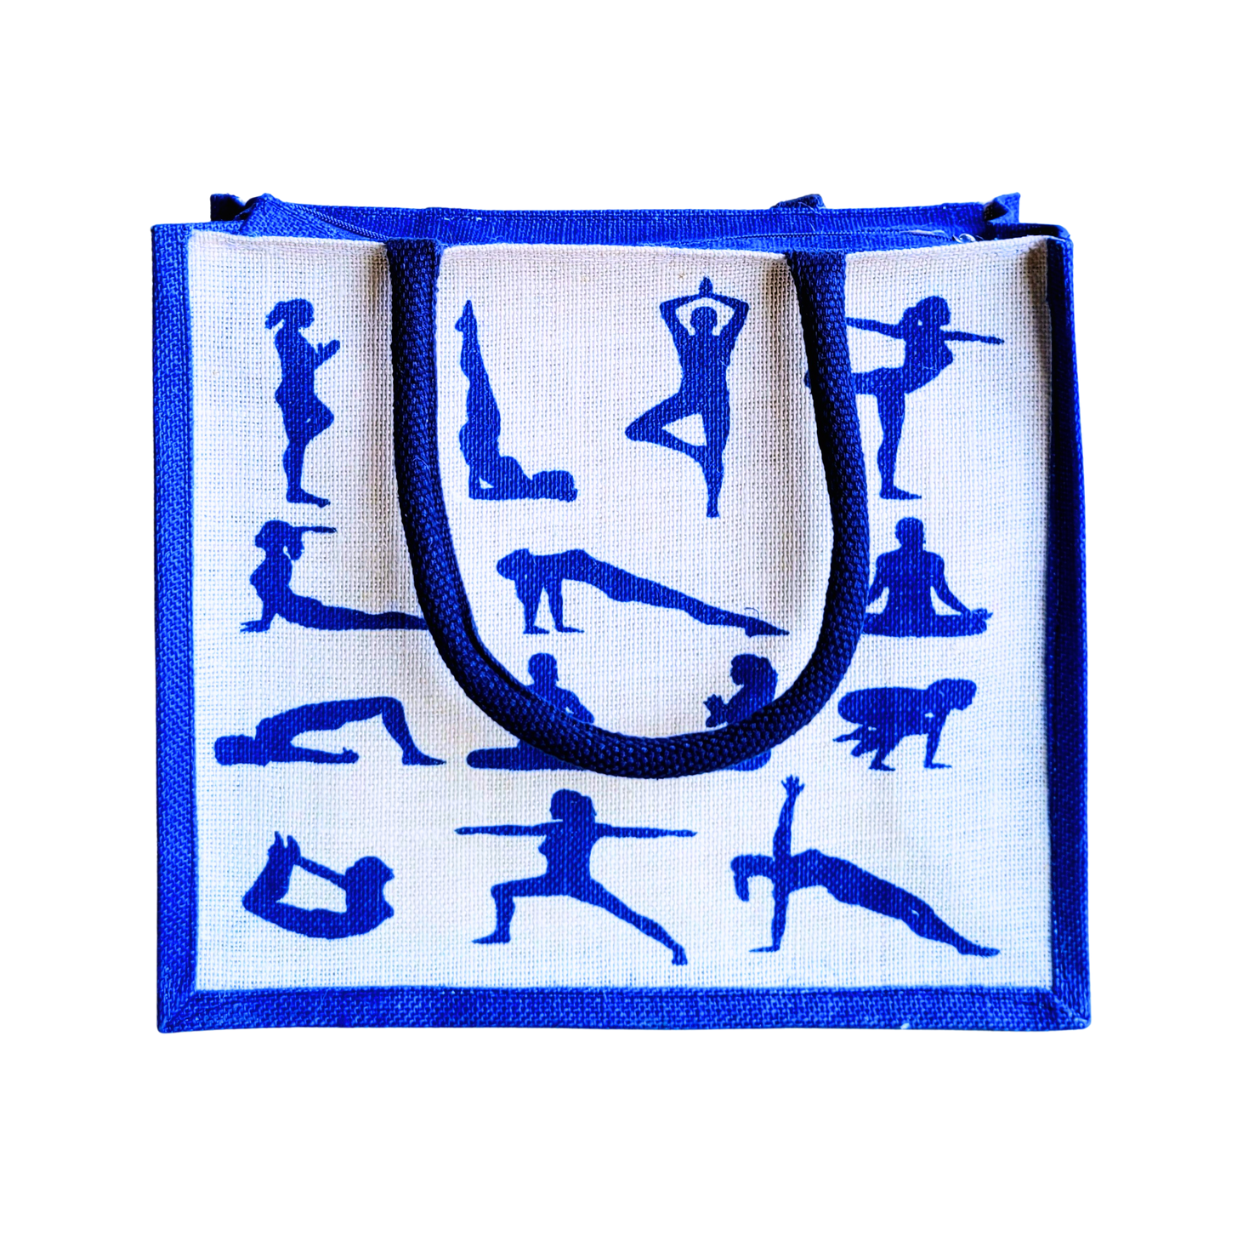 Printed Jute Shopping Bag Yoga Pose - Royal Blue Large